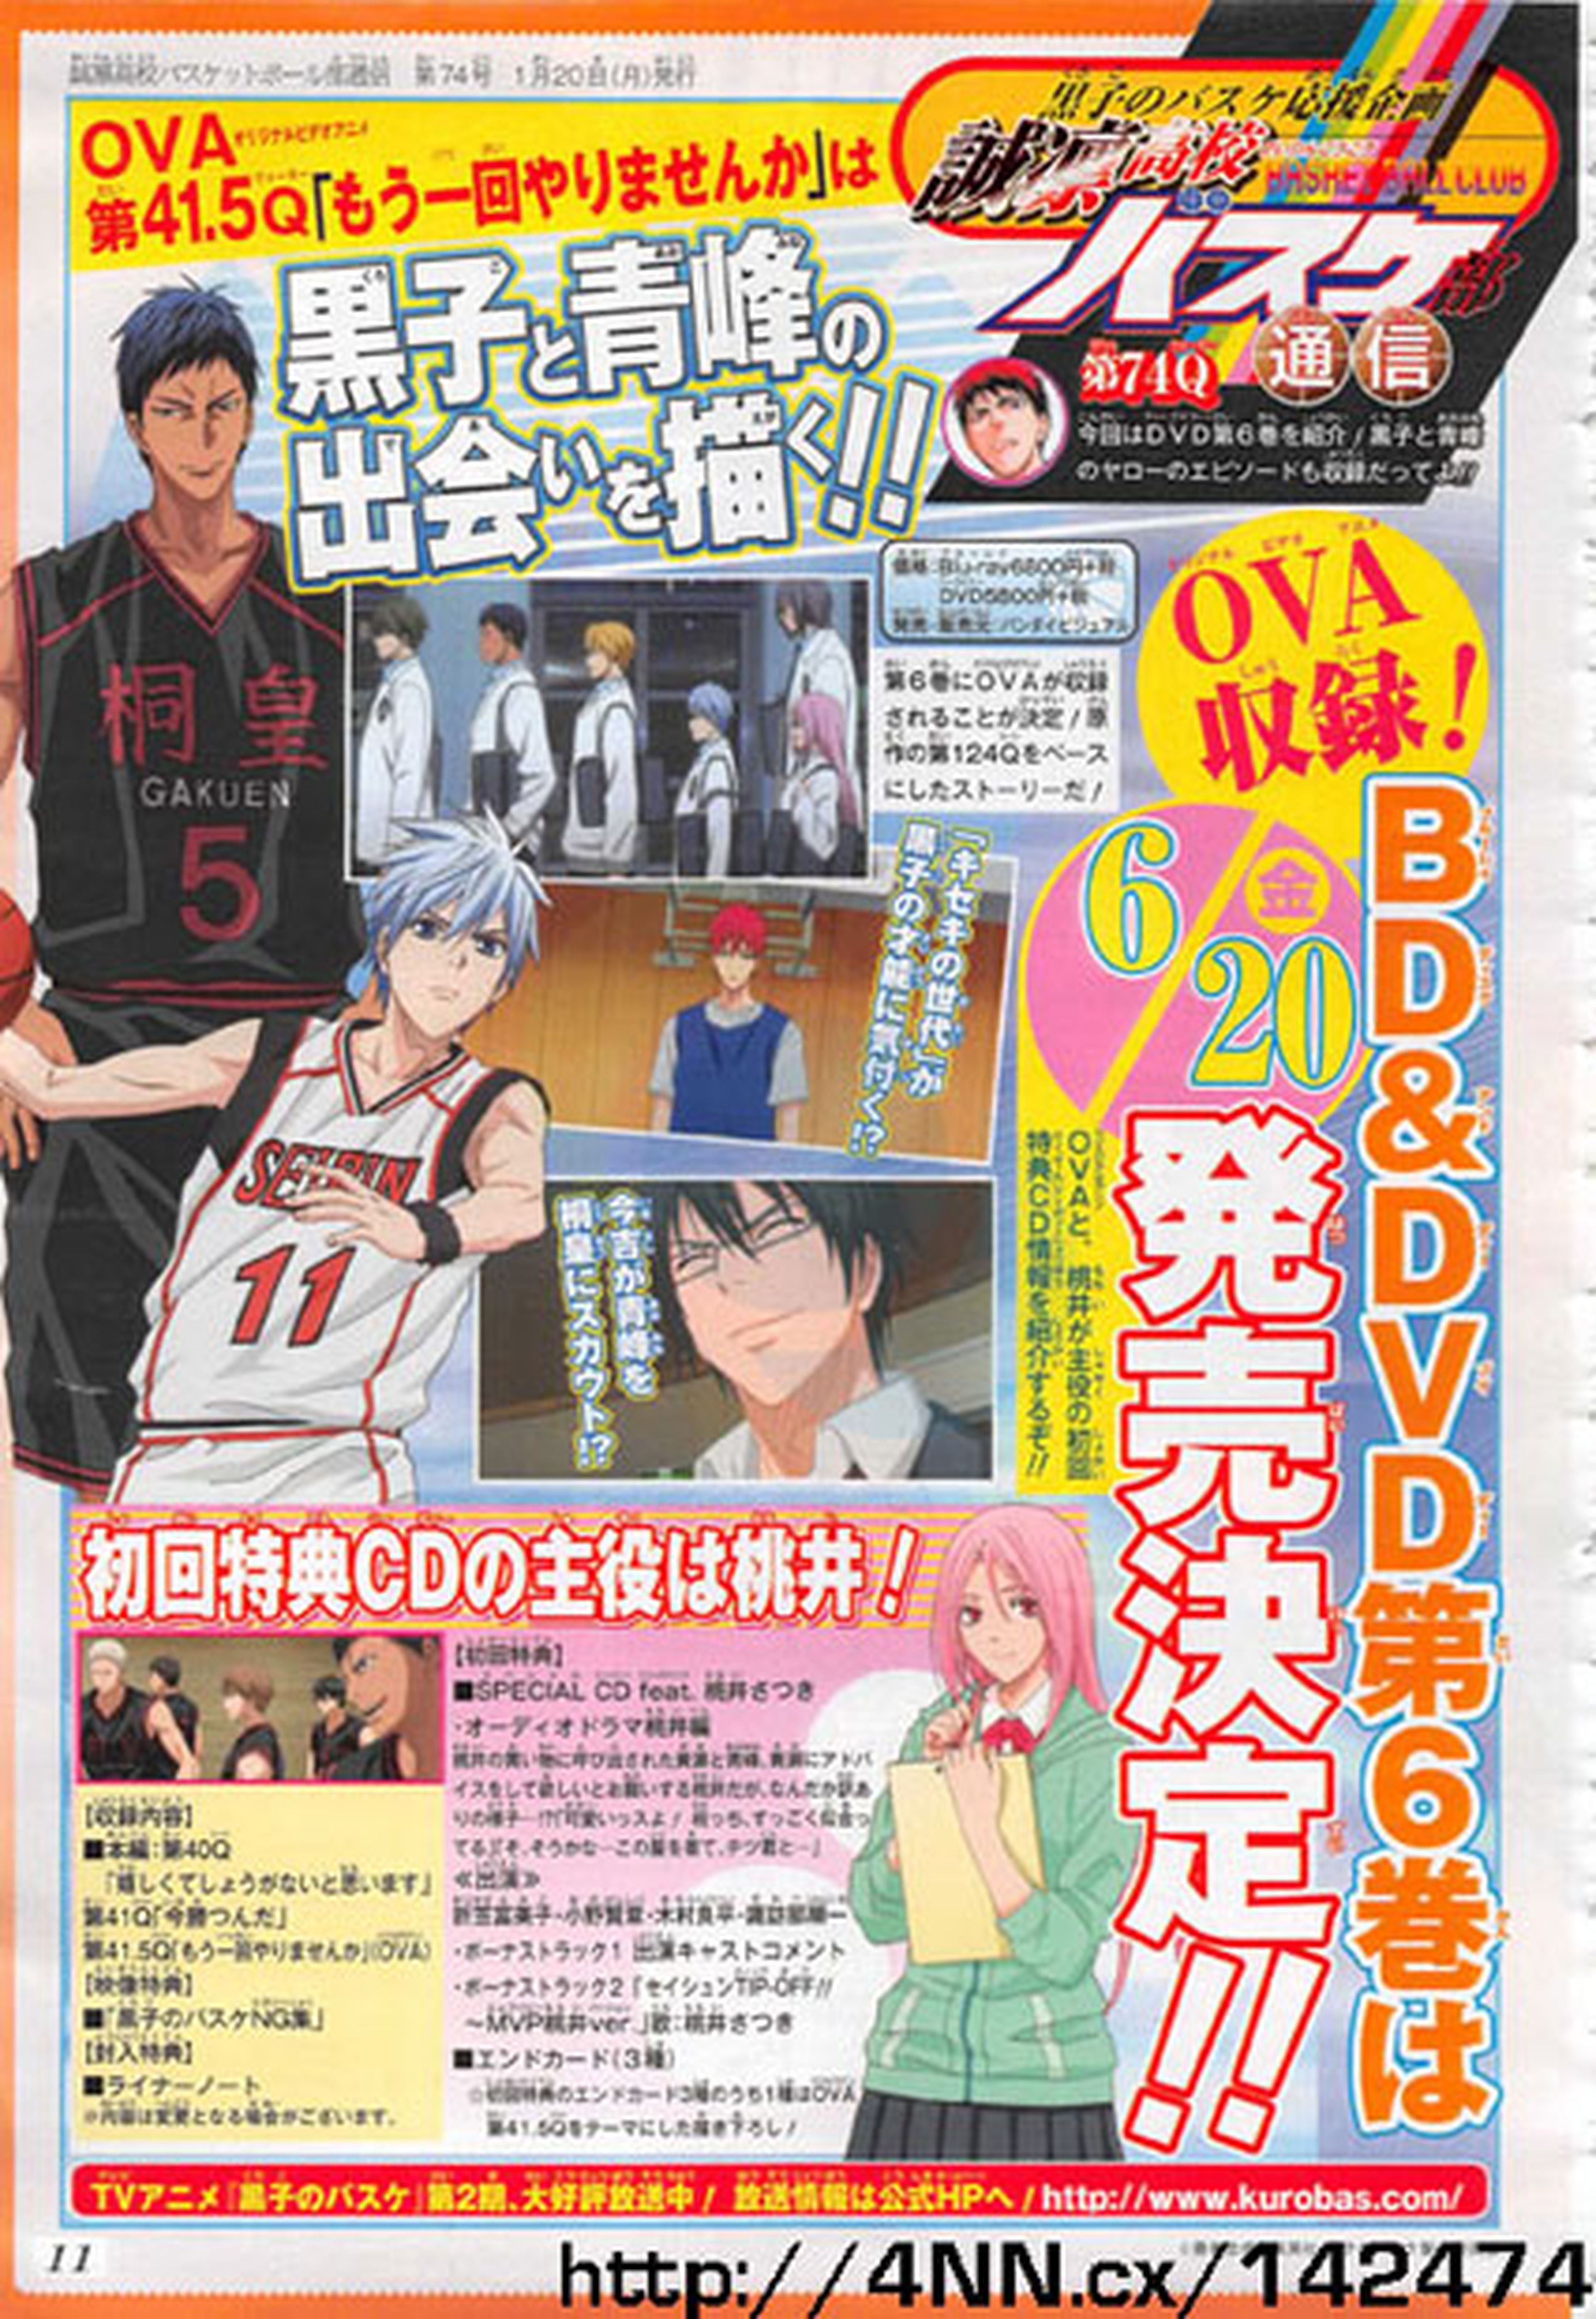 La tercera OVA de Kuroko no Basket, en junio